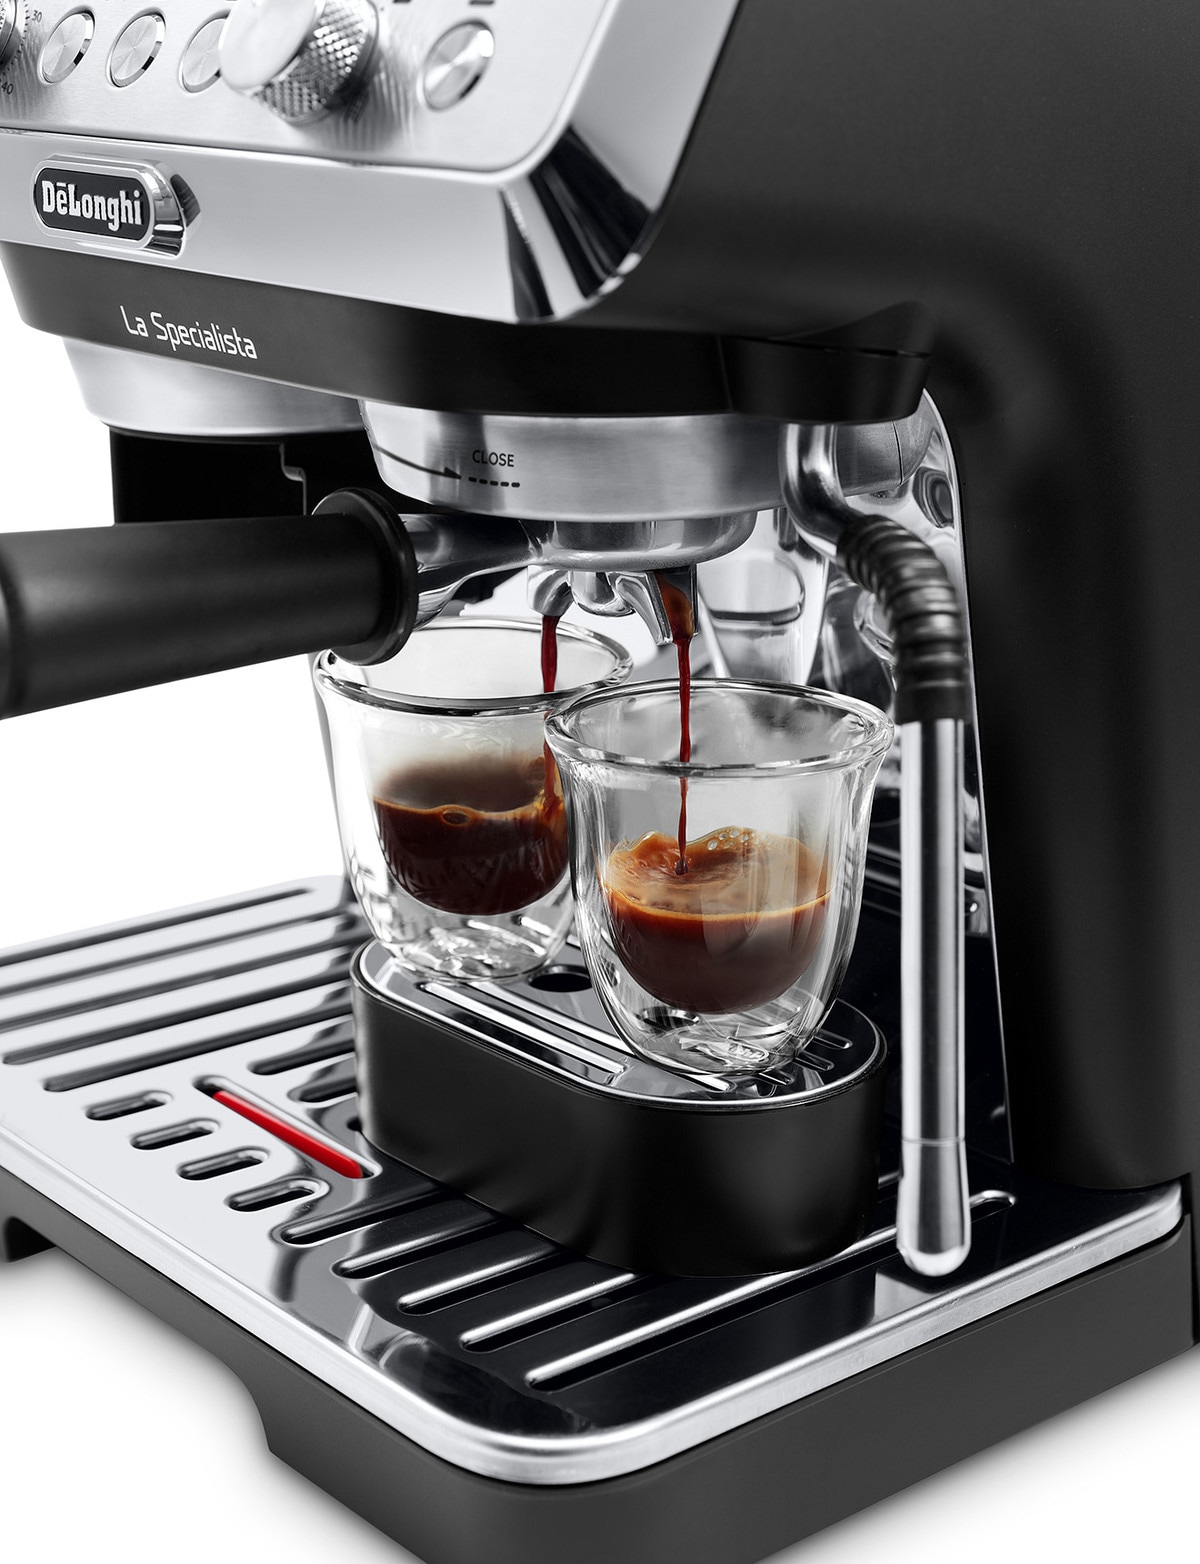 Cafetera Espresso Delonghi Ec9155mb 15 Bares Molinillo Inc.